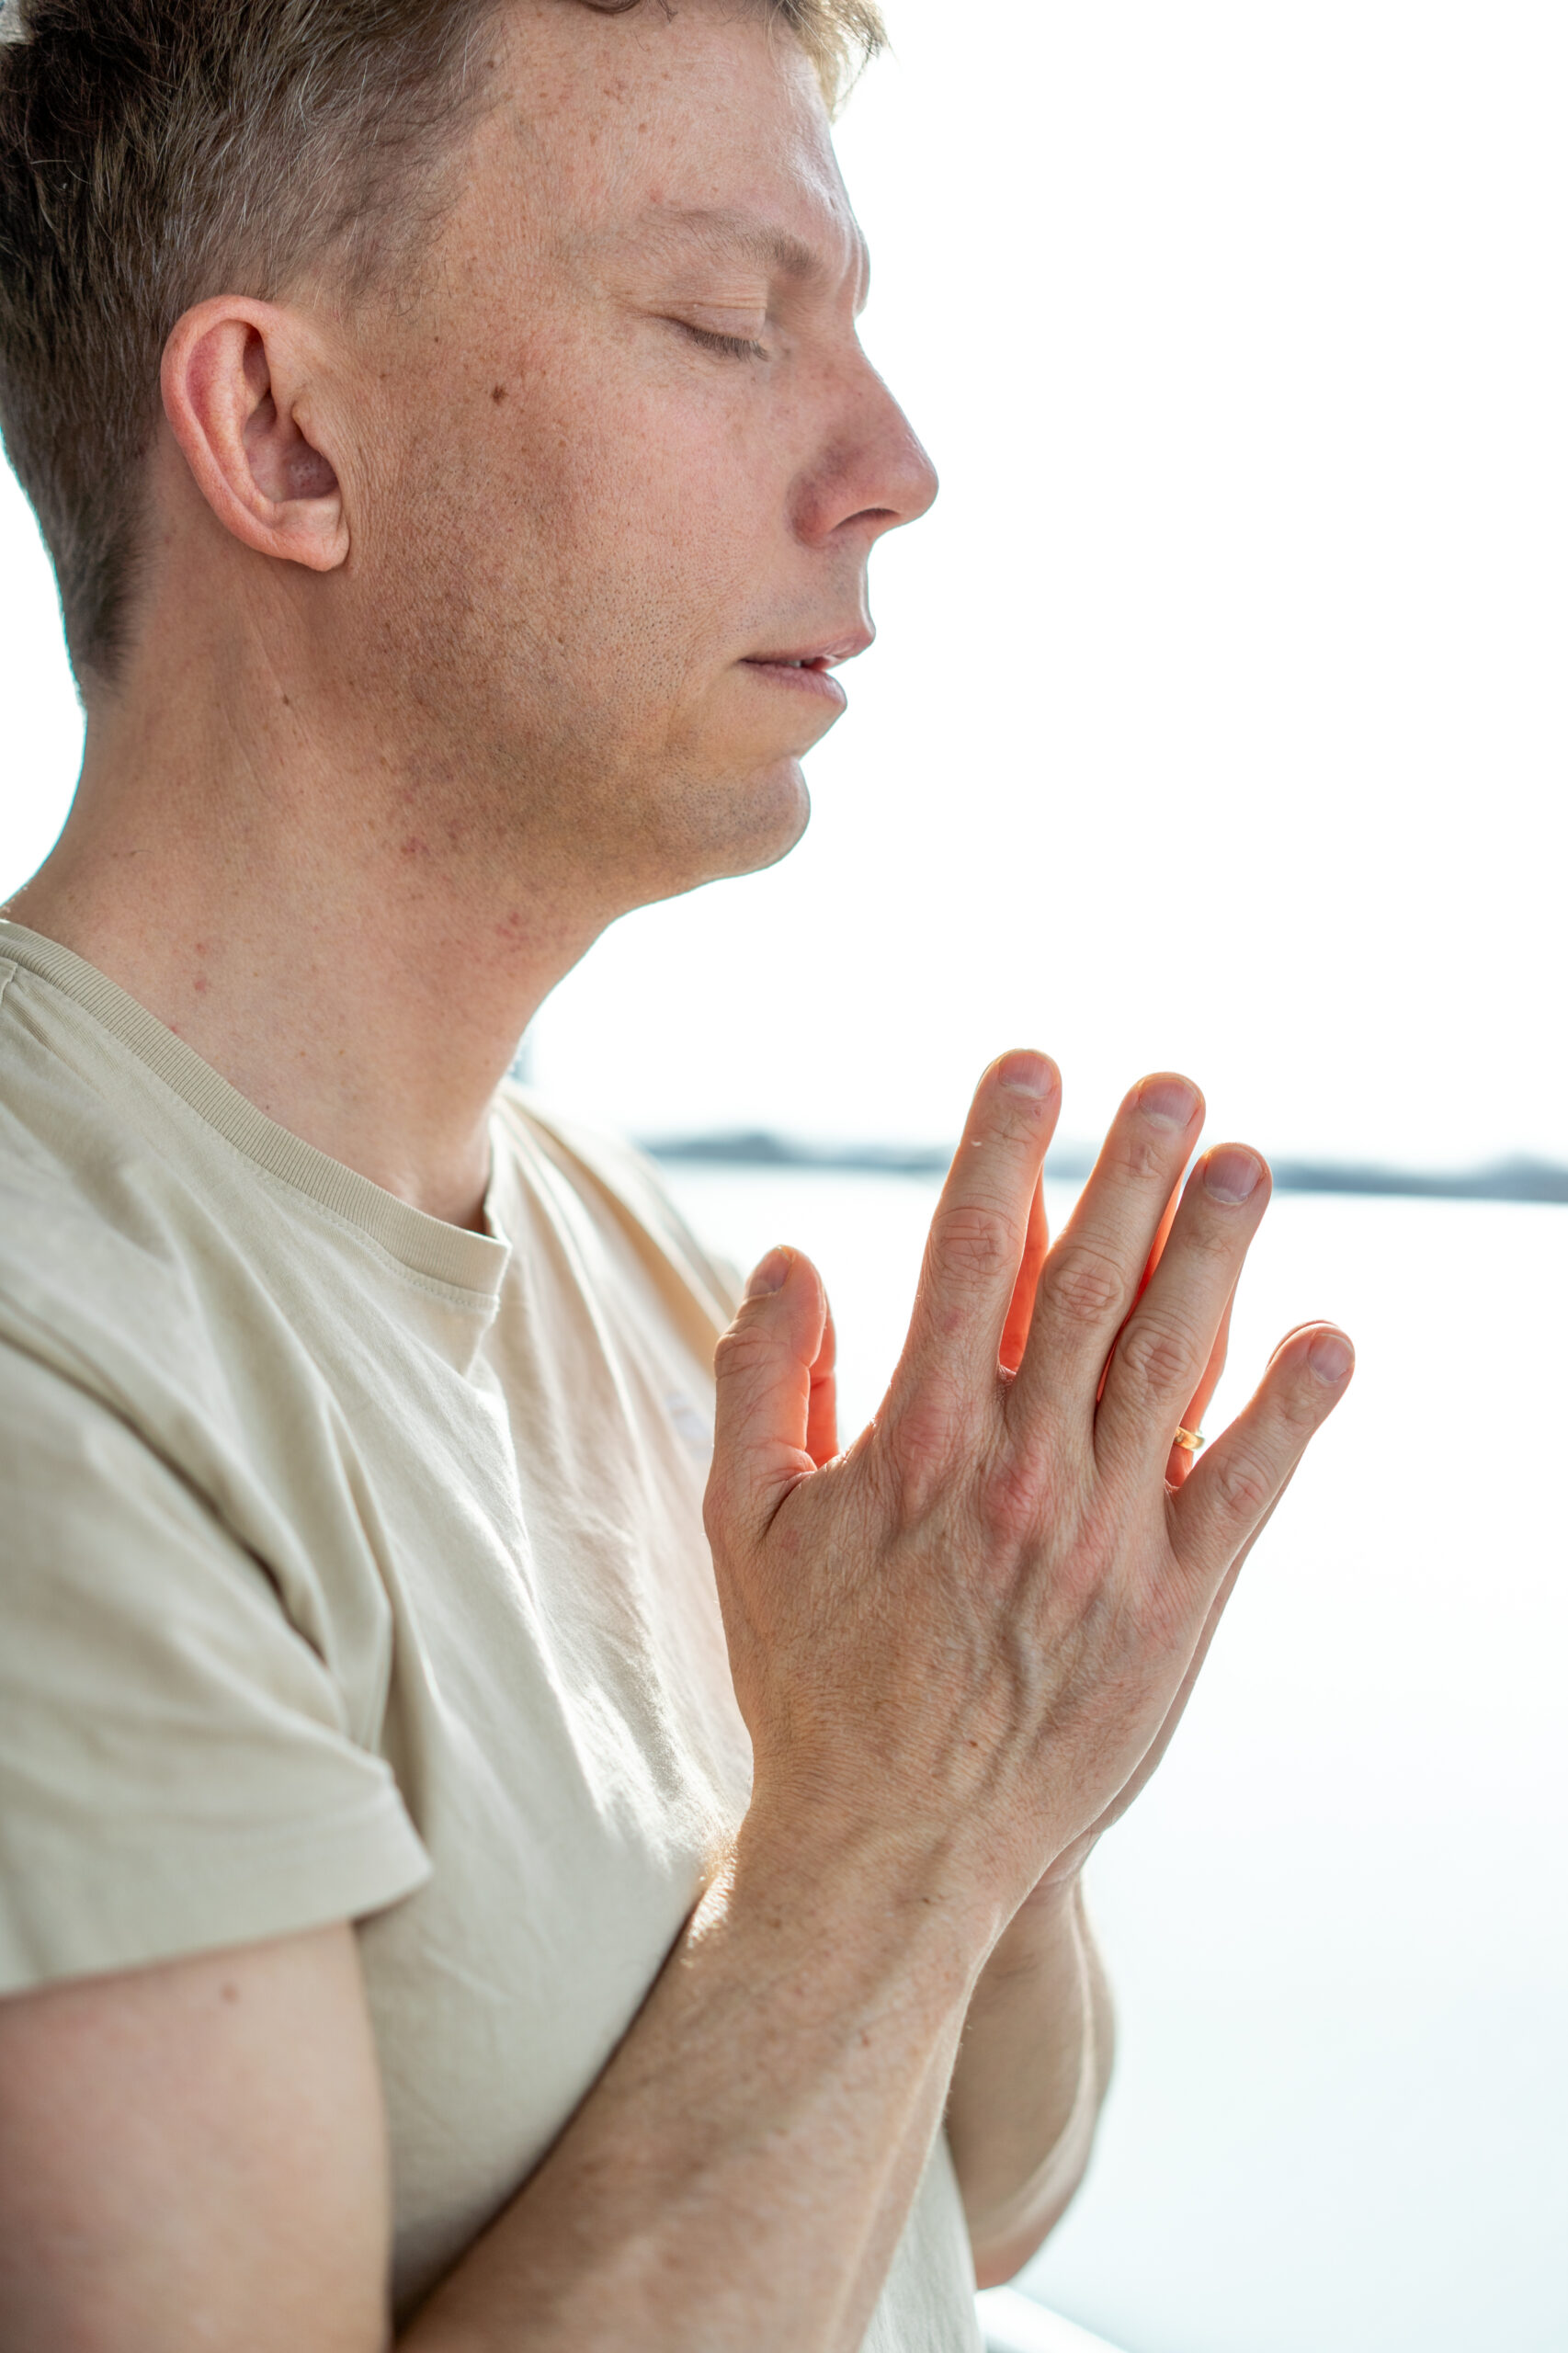 Ein Mann mit geschlossenen Augen in einer Yoga-Pose, seine Hände in einer Geste des Gleichgewichts und der Konzentration vor seinem Herzen, was auf die tiefe Verbindung und Ruhe hinweist, die in einer Yin-Yoga-Ausbildung gelehrt wird.